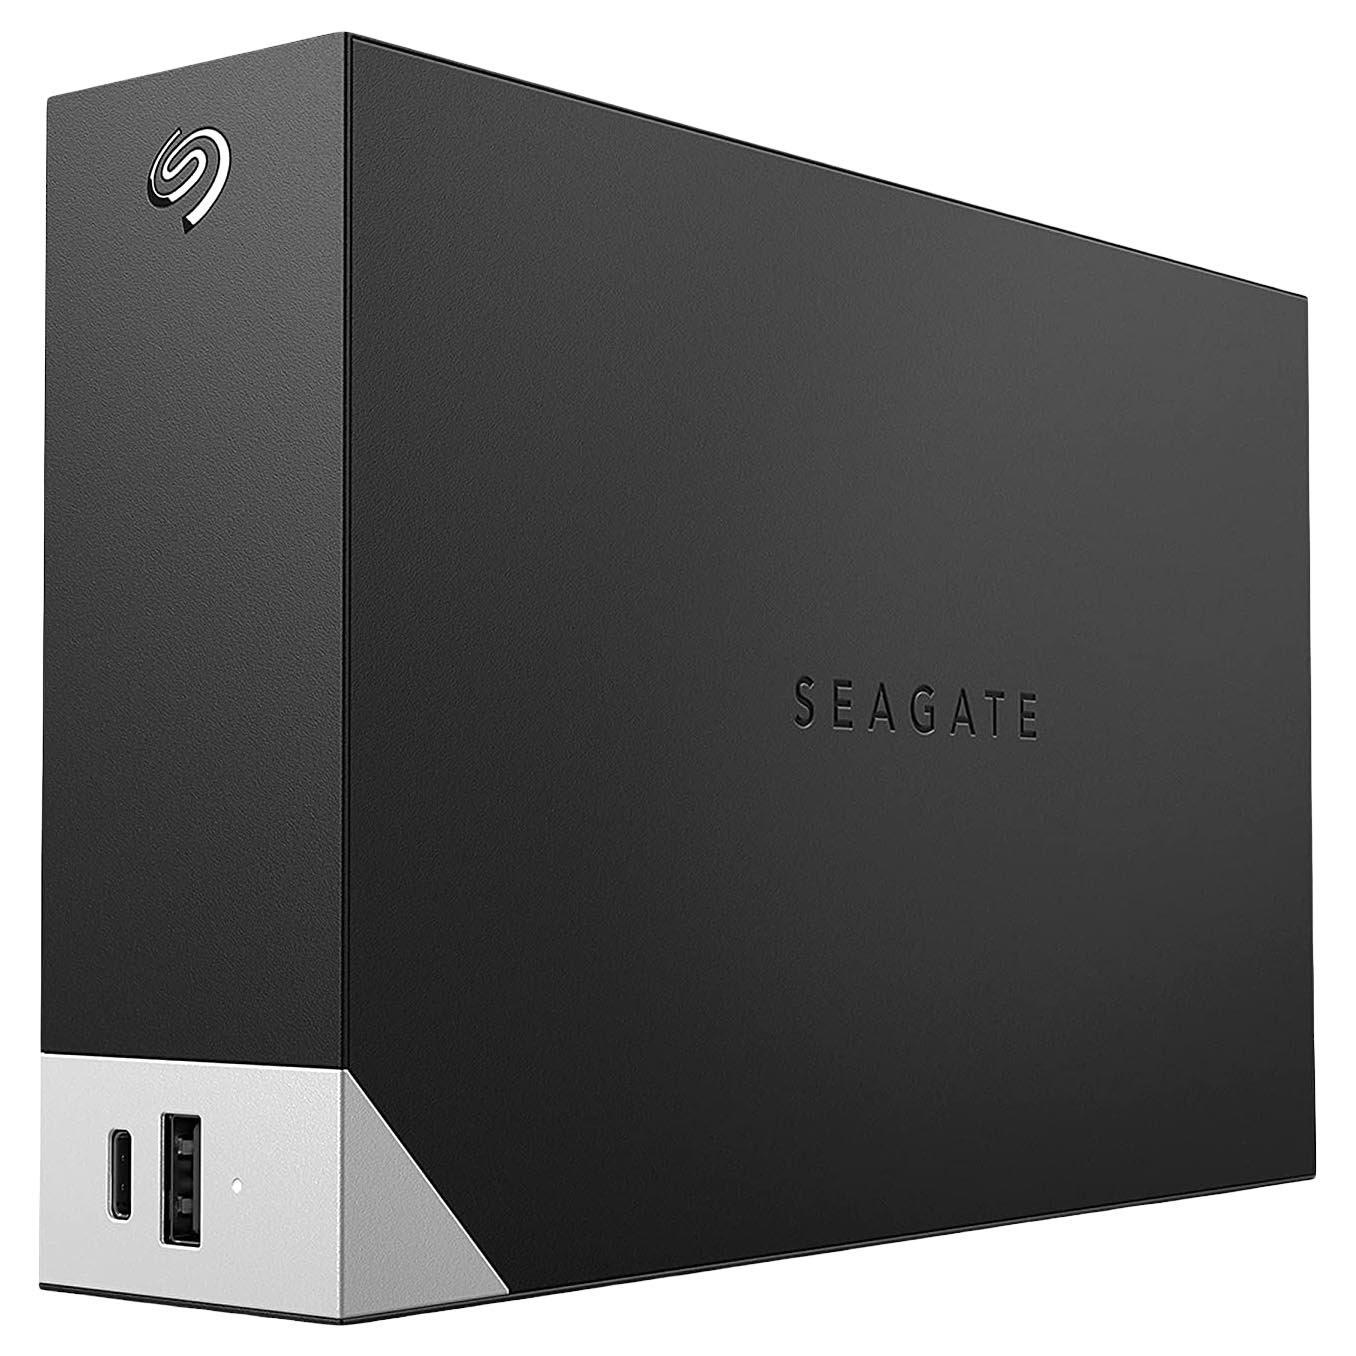 Внешний жесткий диск Seagate One Touch, STLC18000400, 18Тб, 3.5 внешний жесткий диск 2 5 4 tb usb 3 0 seagate one touch stkc4000401 серебристый